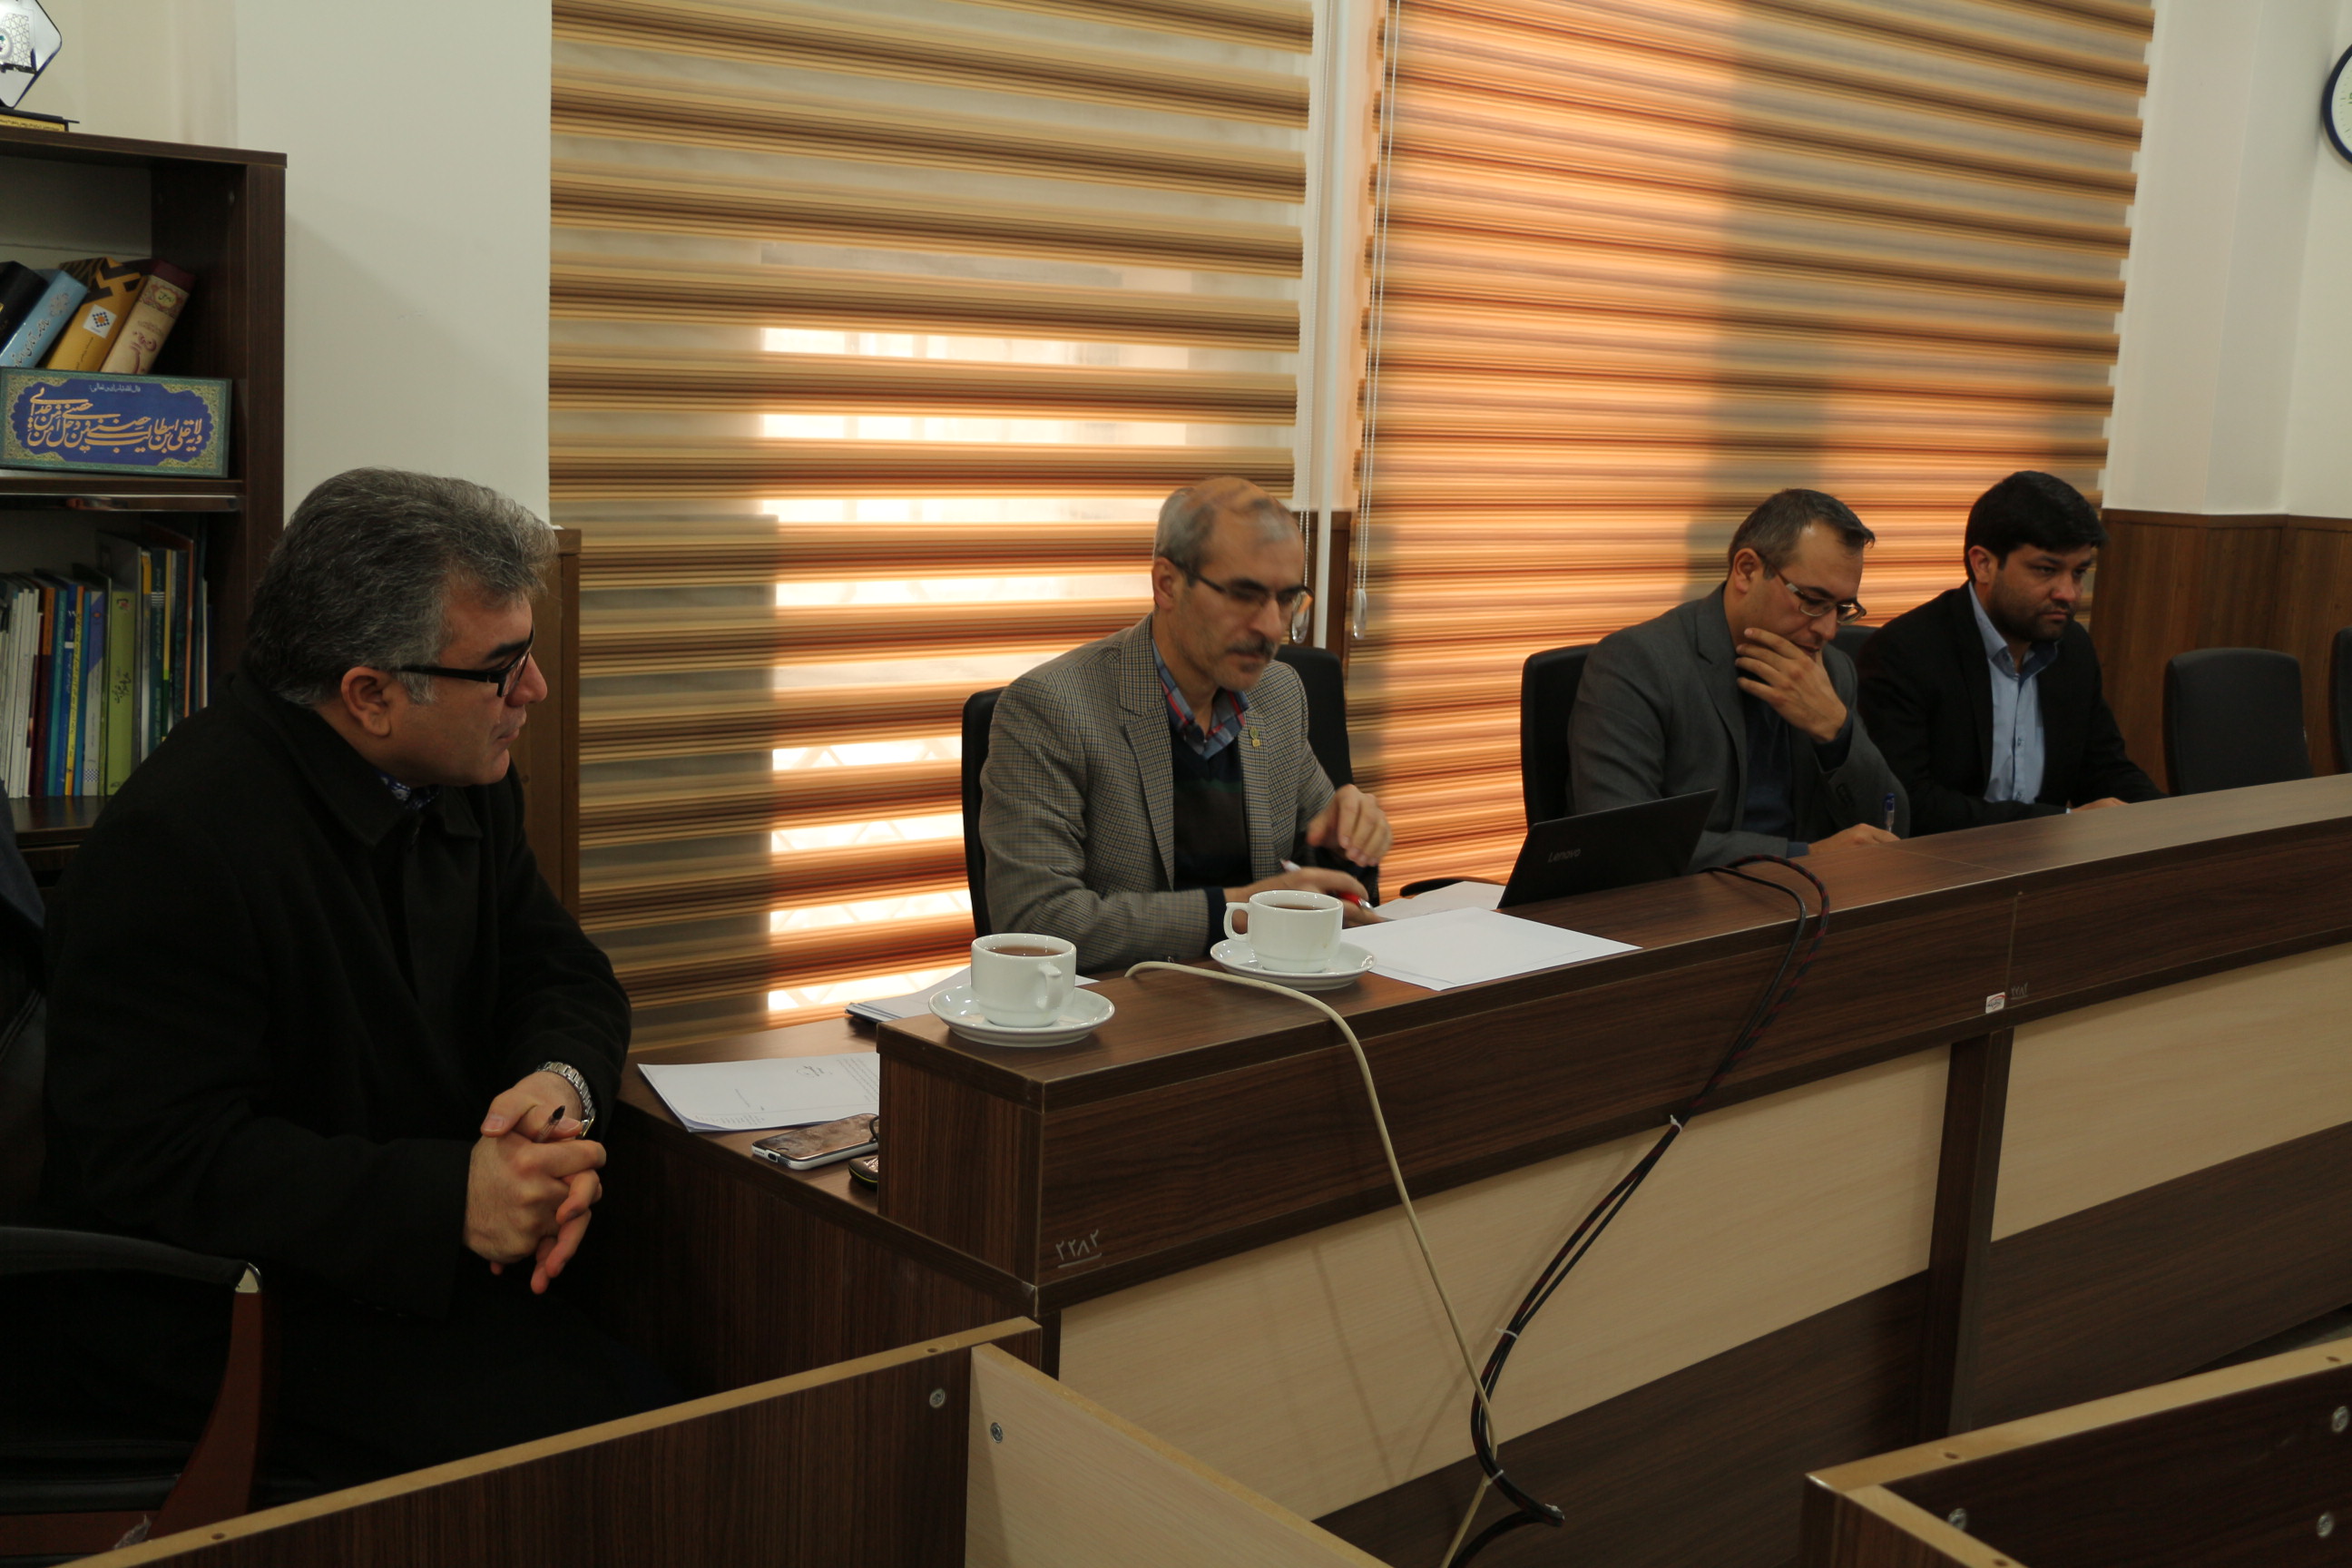 جلسه شورای دانشگاه با حضور دکتر علیرضا حسینی رئیس دانشگاه کوثر